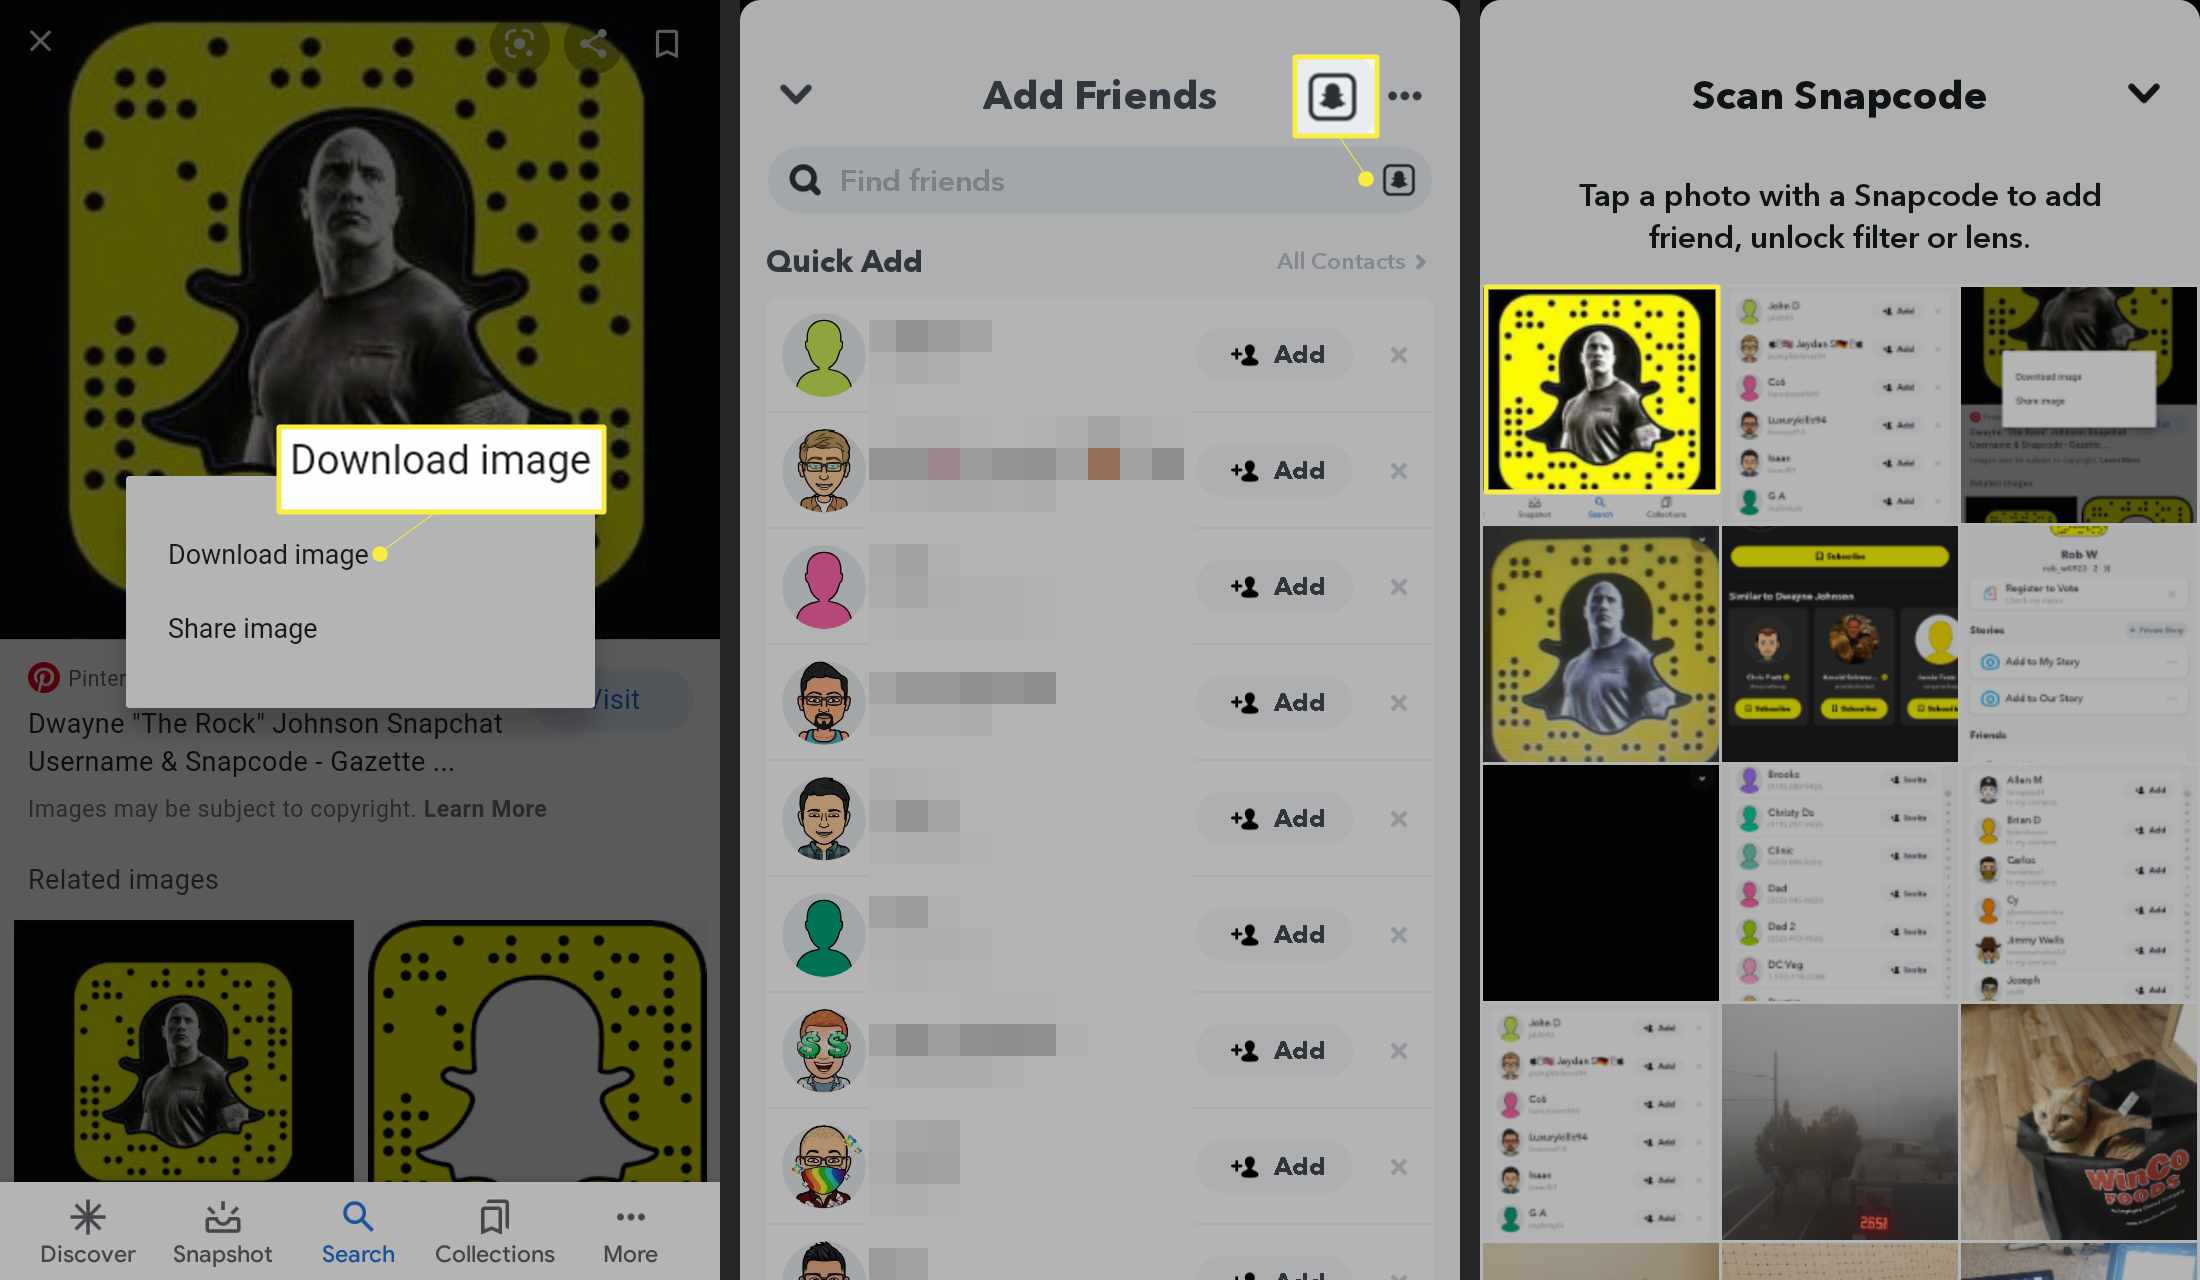 Encontre alguém no Snapchat enviando um snapcode